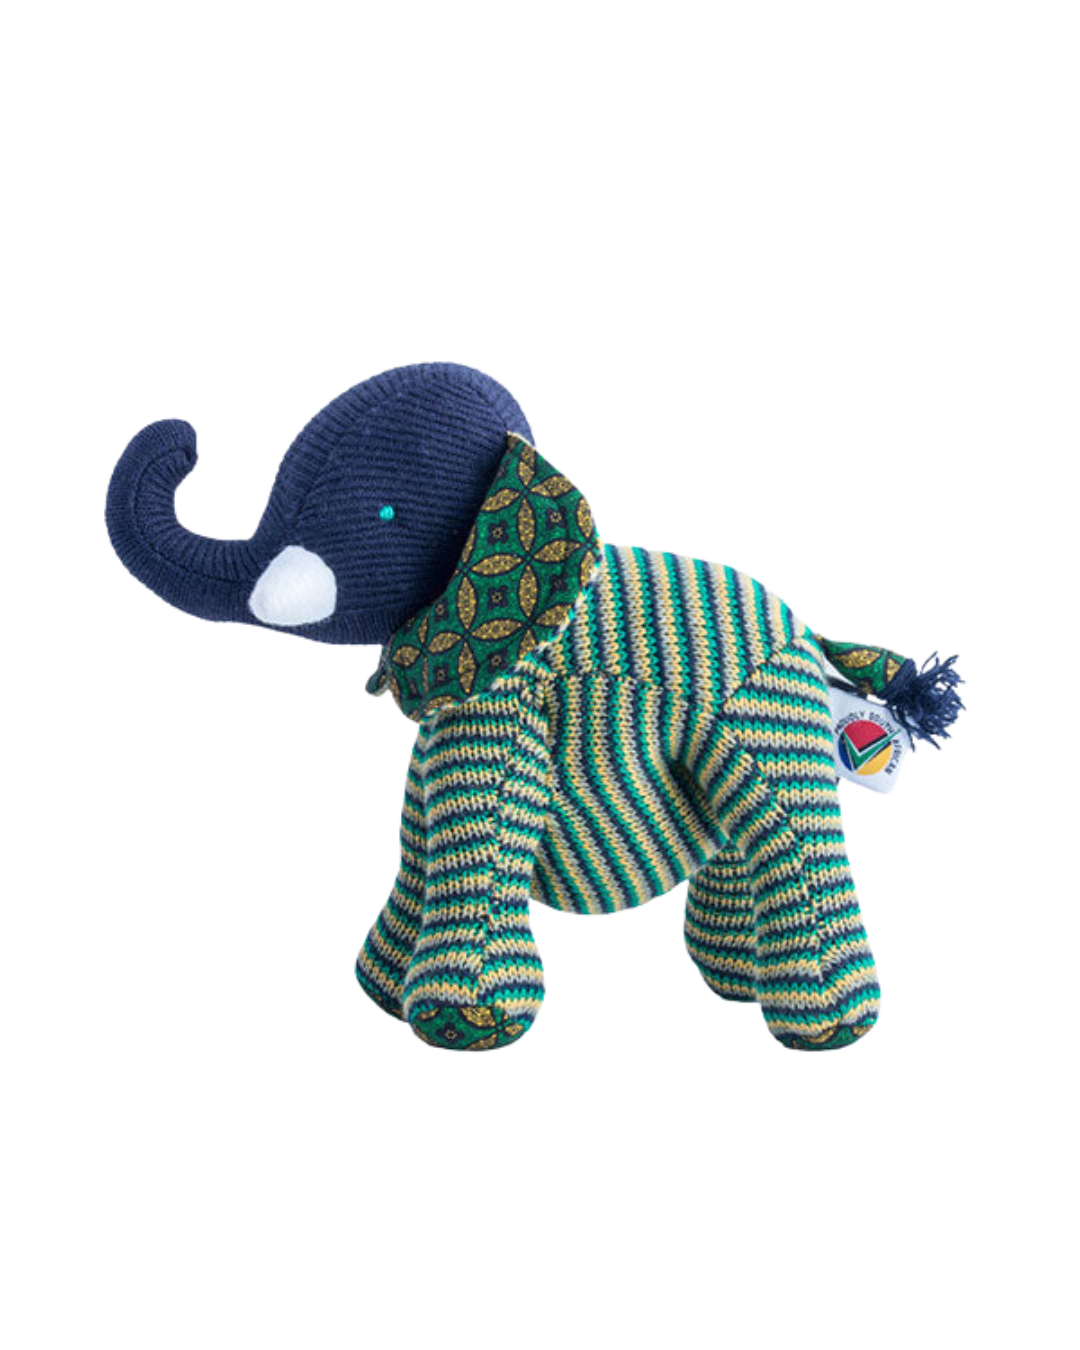 Baby Elephant Soft Toys